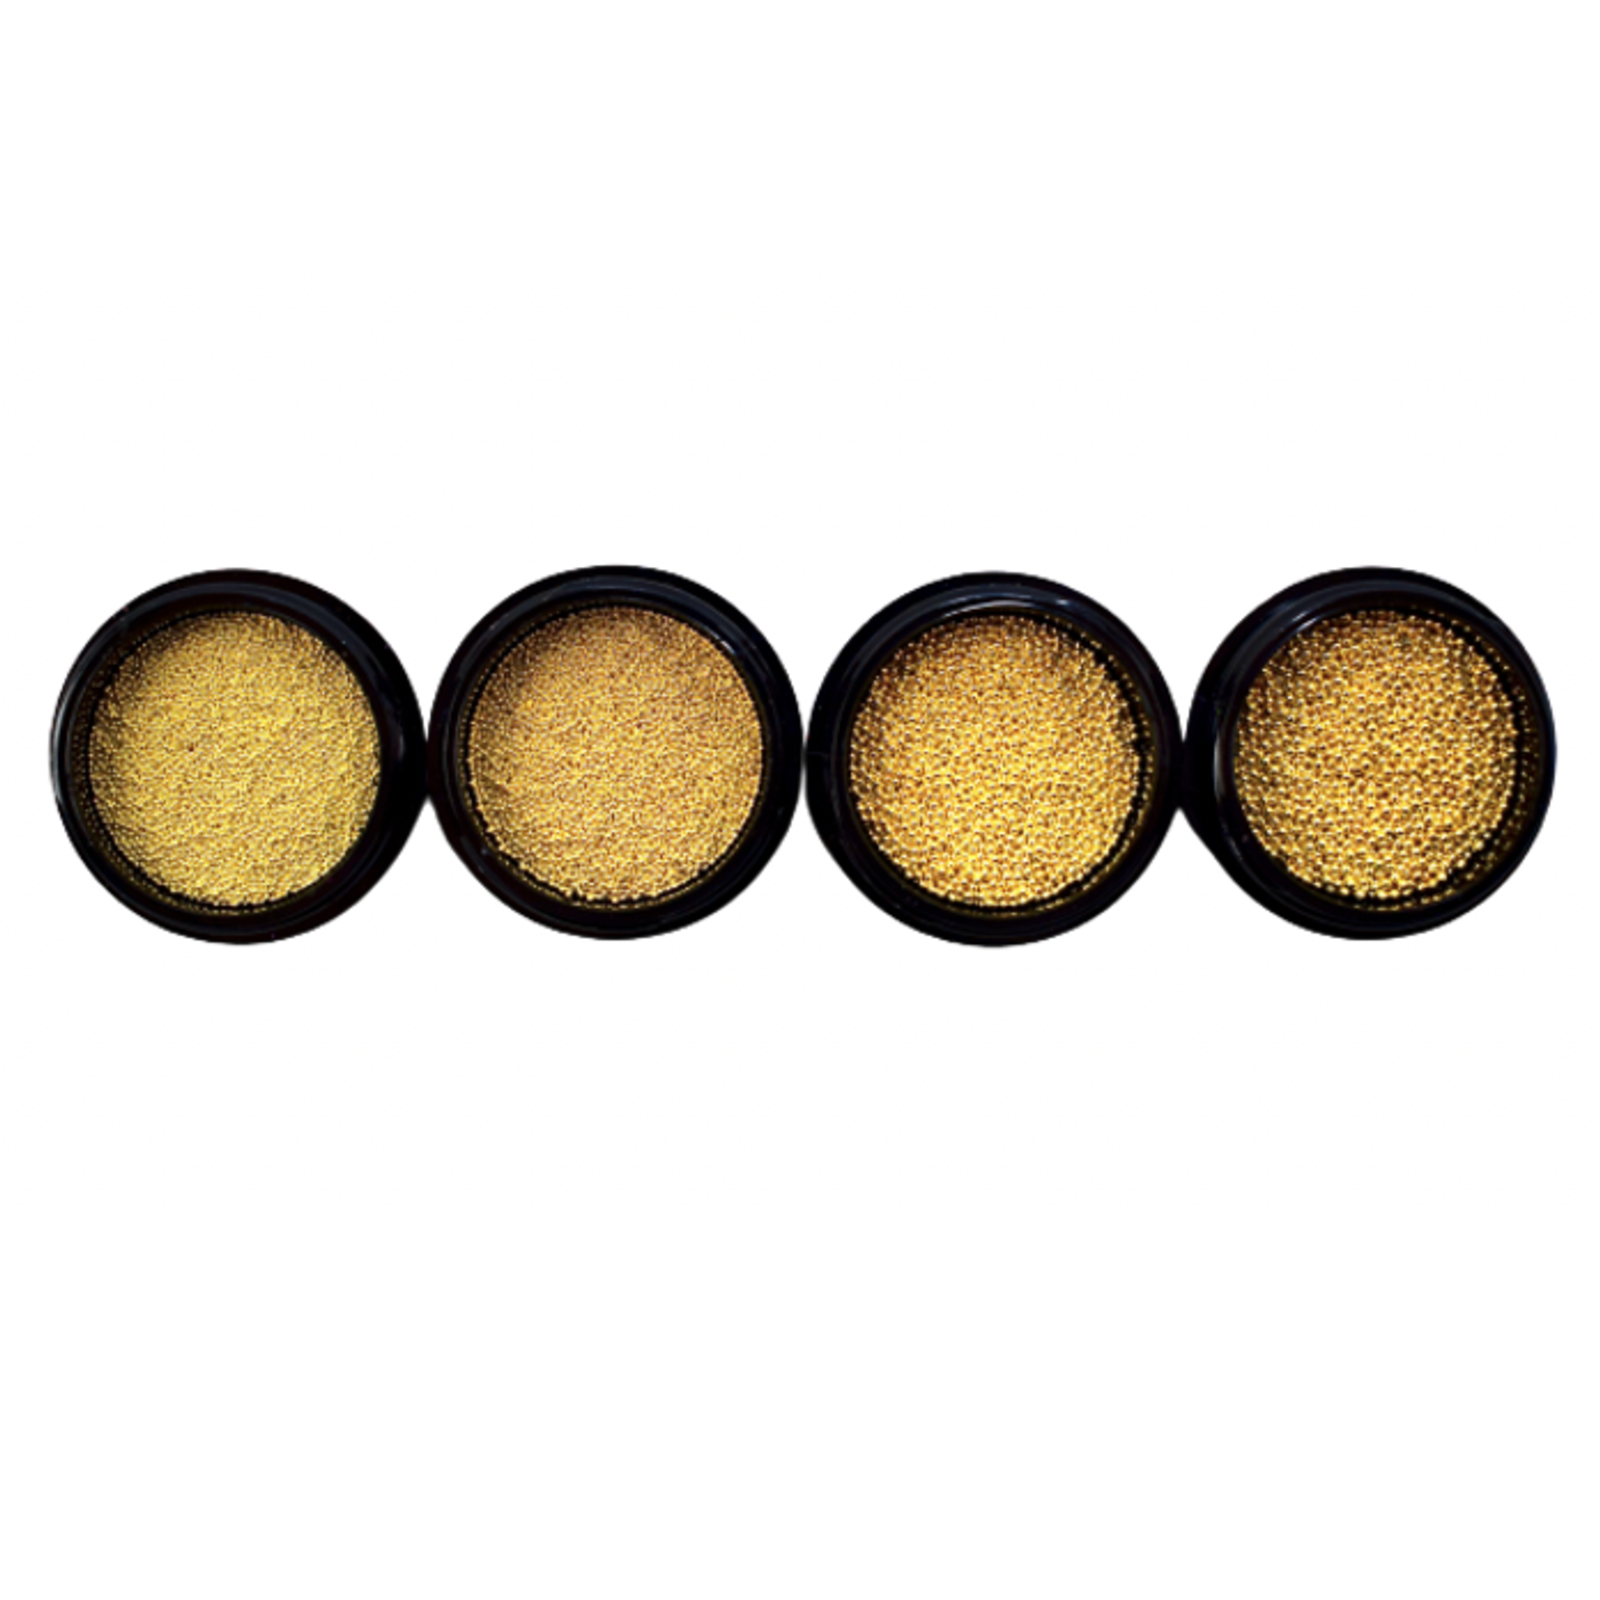 Urban nails Caviar beads gold set 0.4/ 0.6/0.8/1.0